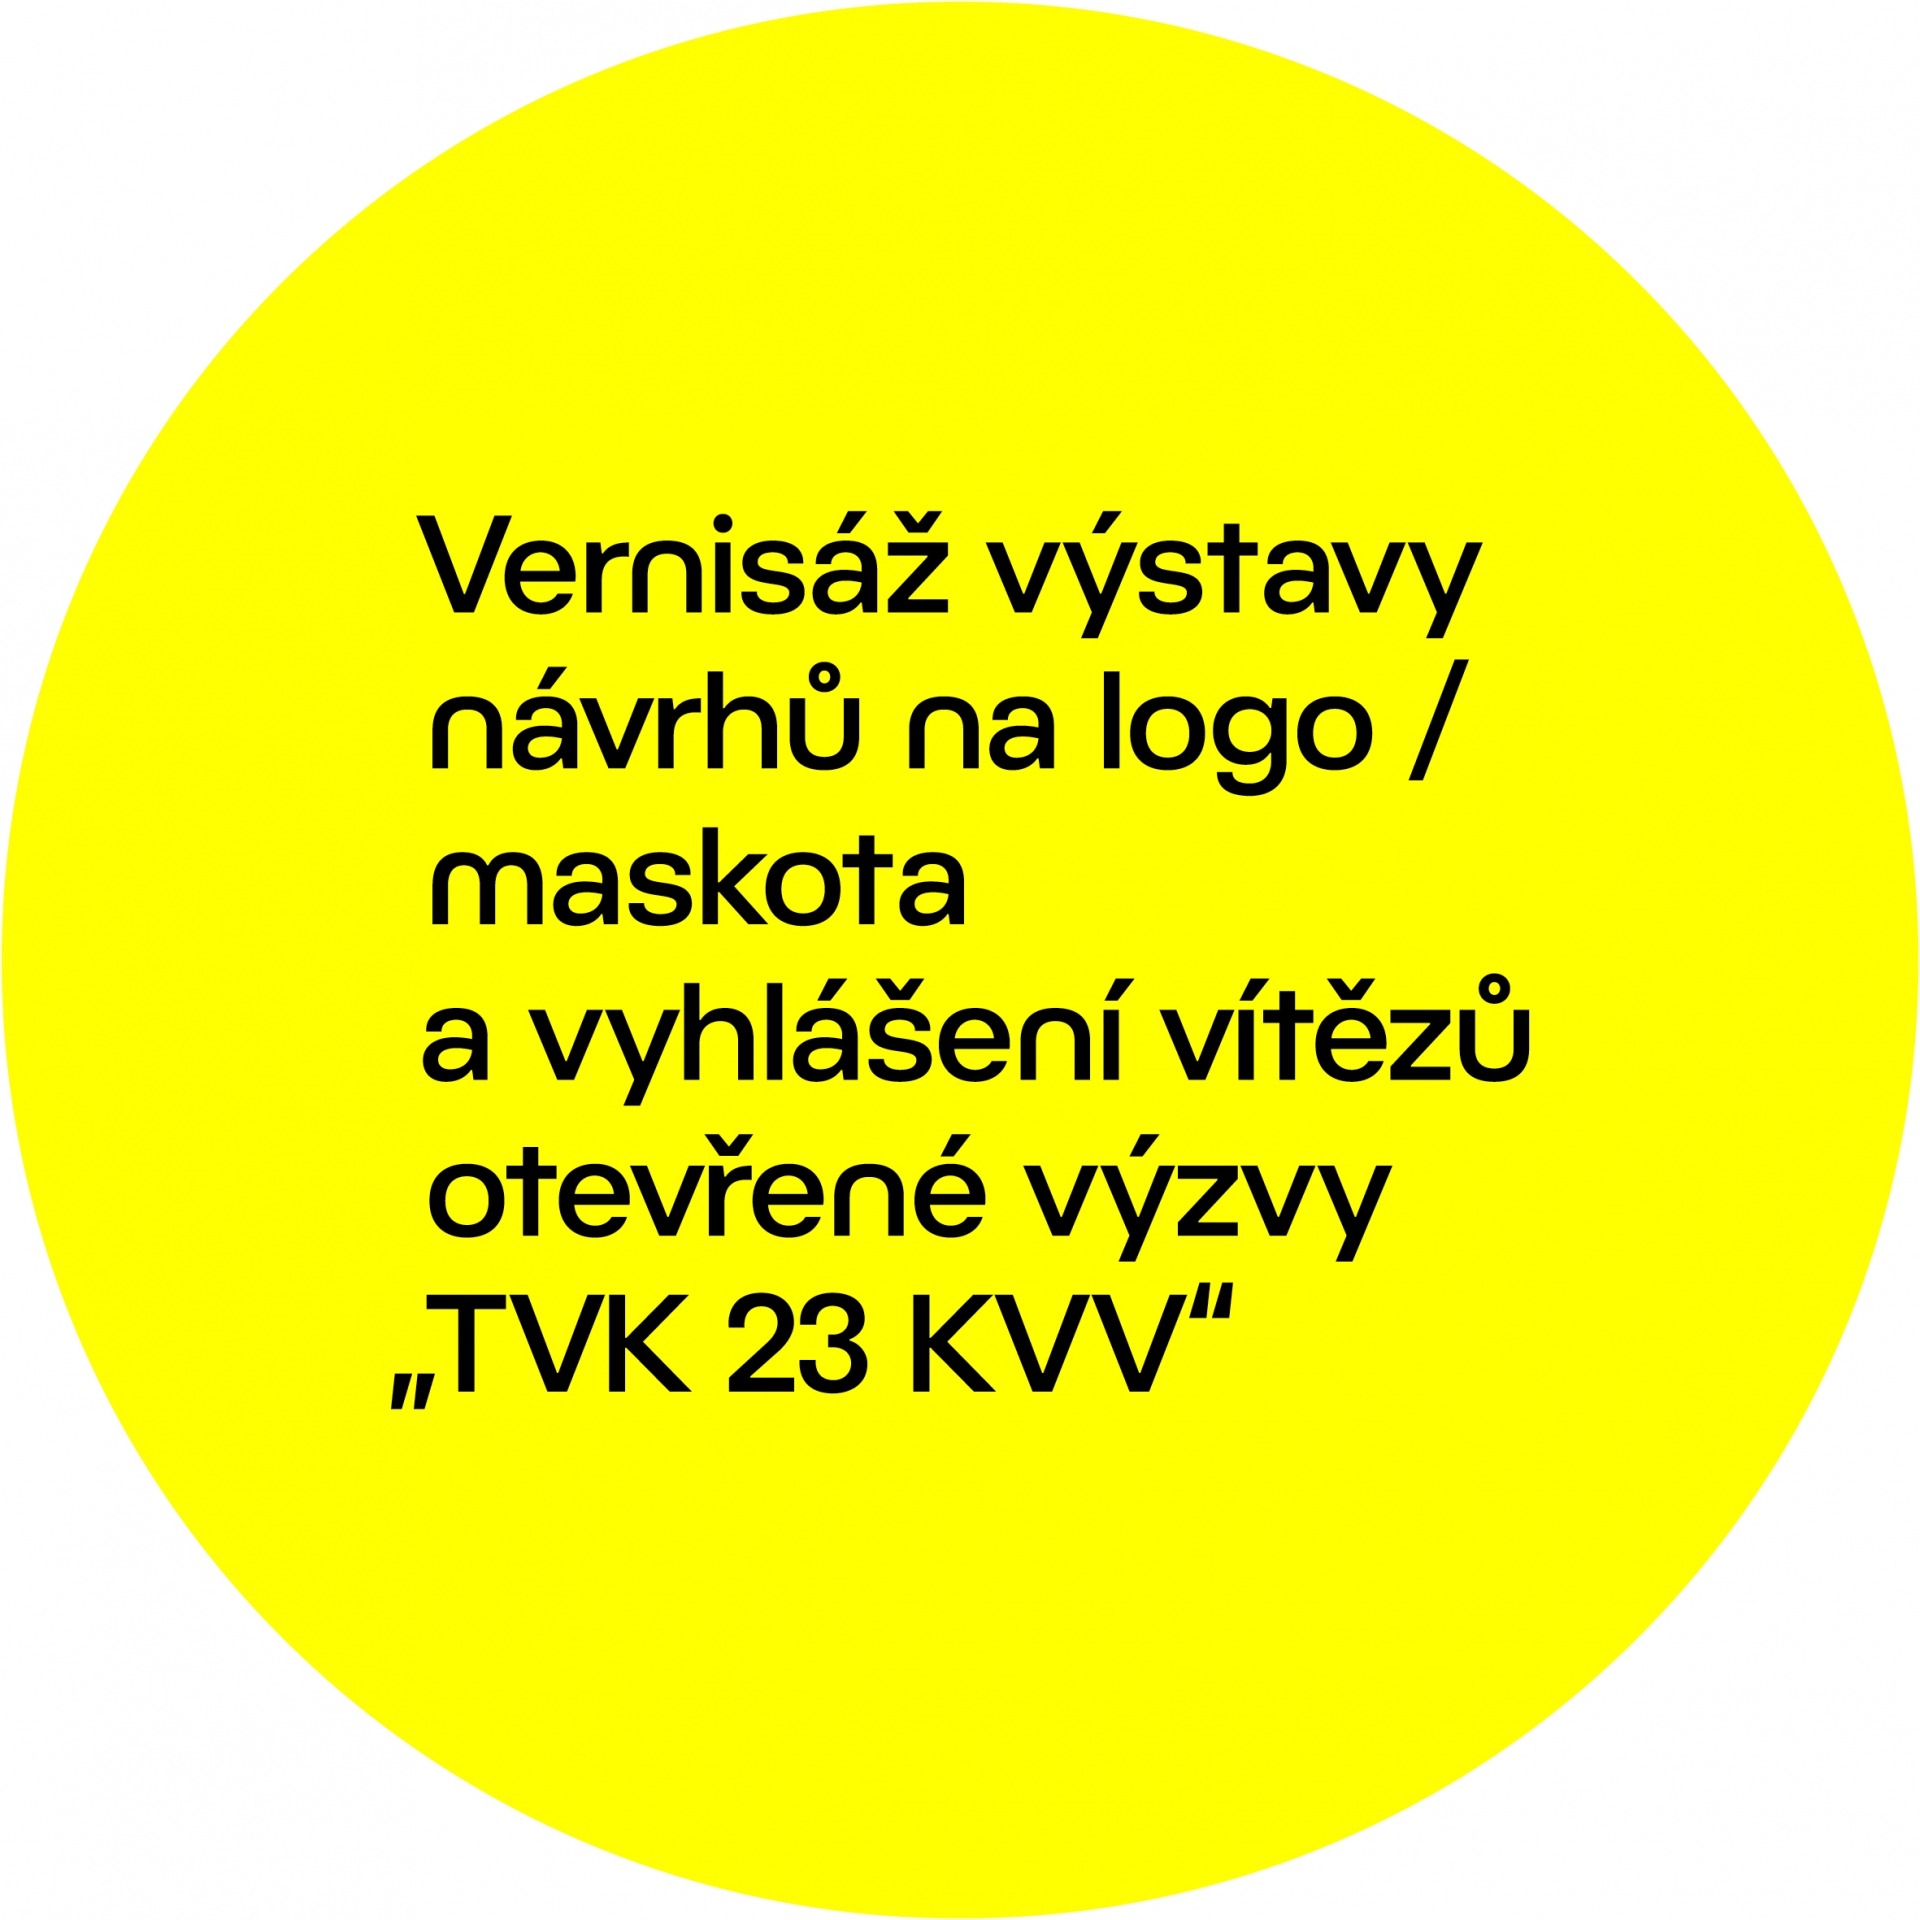 TVK 23 KVV